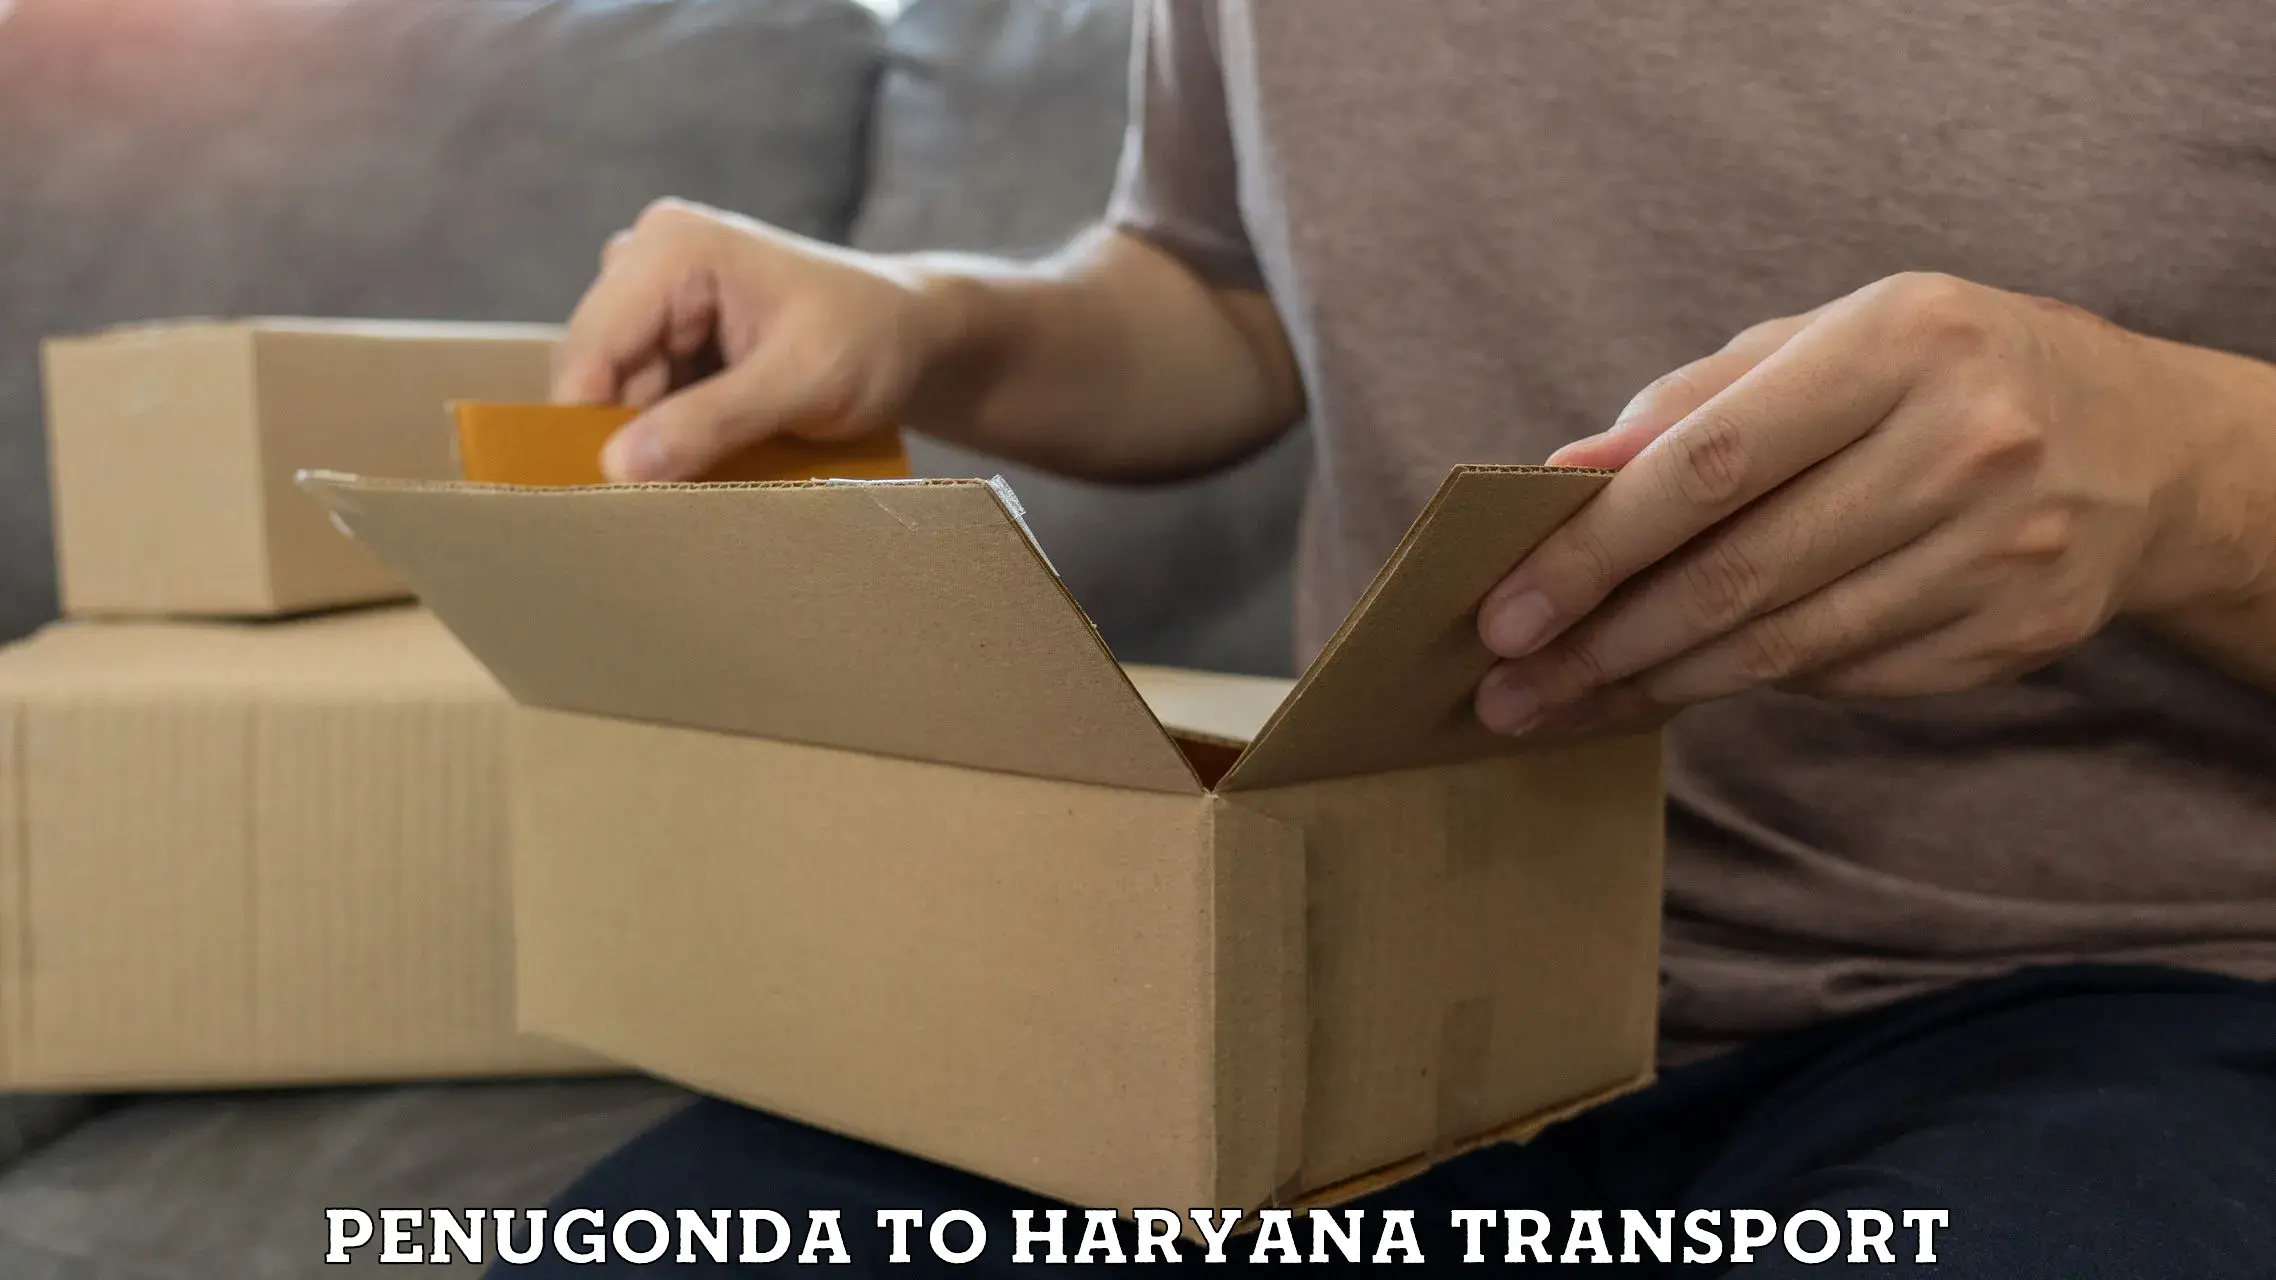 Container transport service Penugonda to Gurgaon